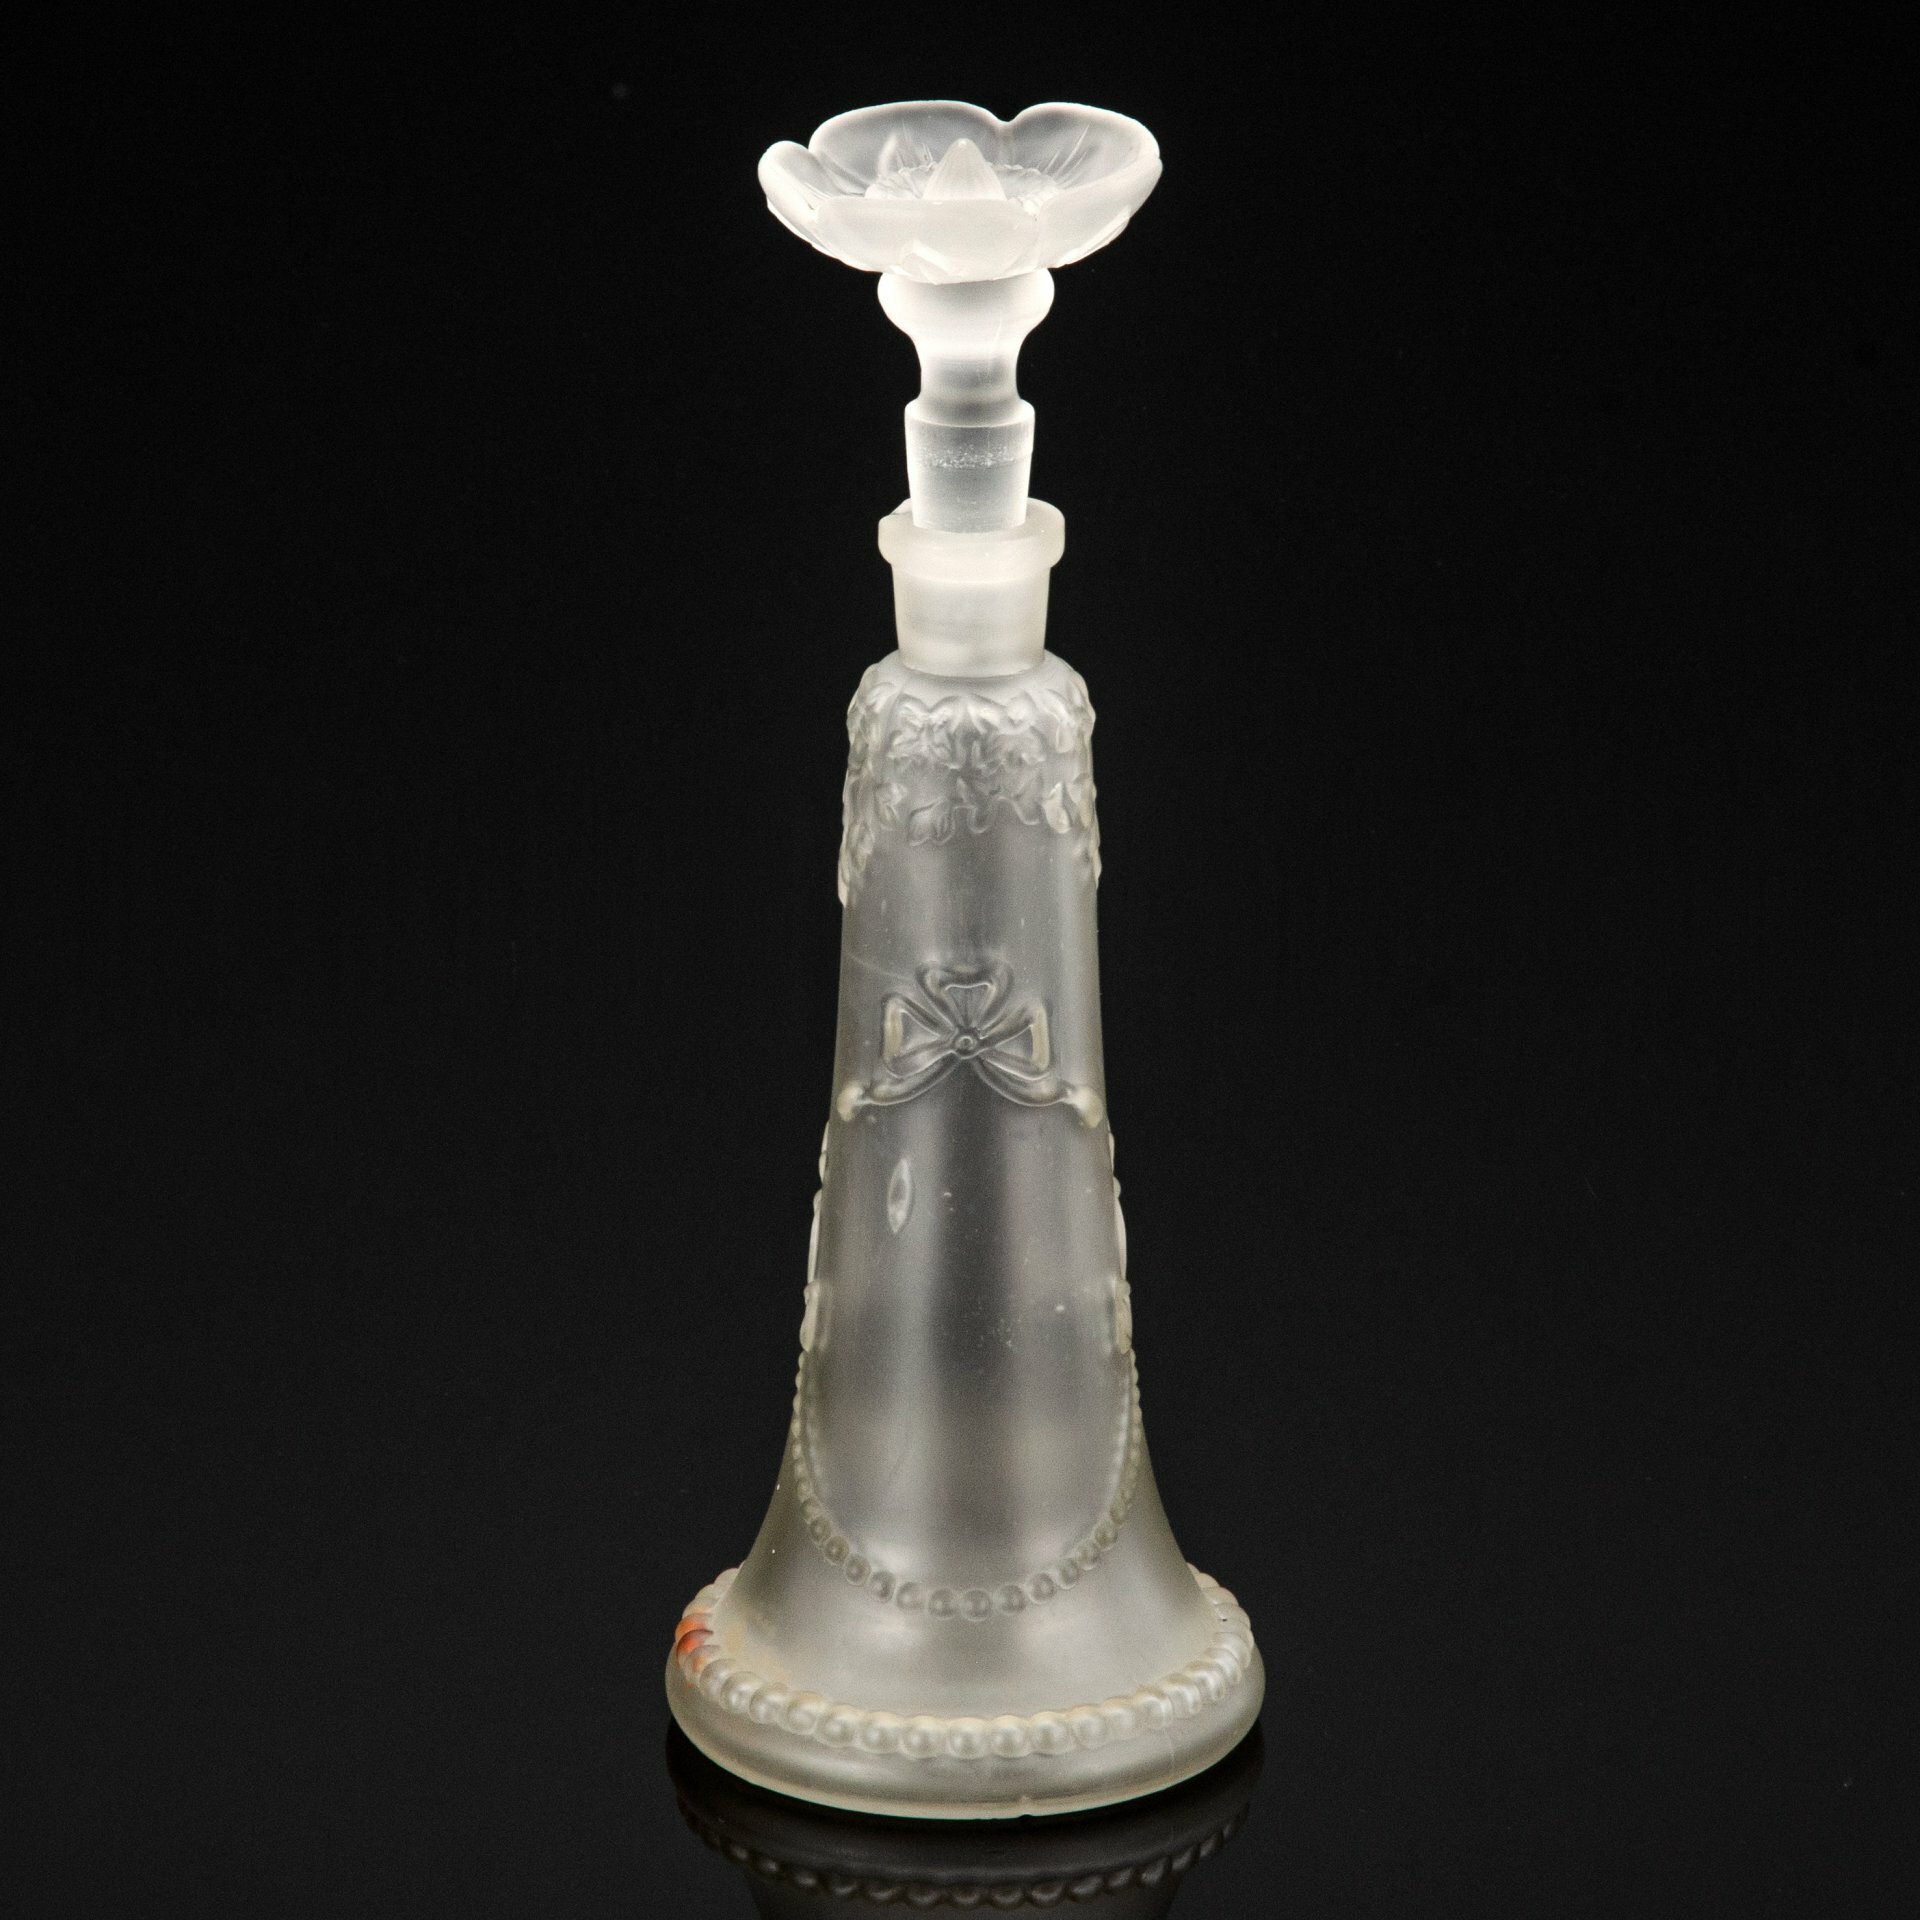 Флакон парфюмерный с декором в виде растительных мотивов и гирлянд, стекло